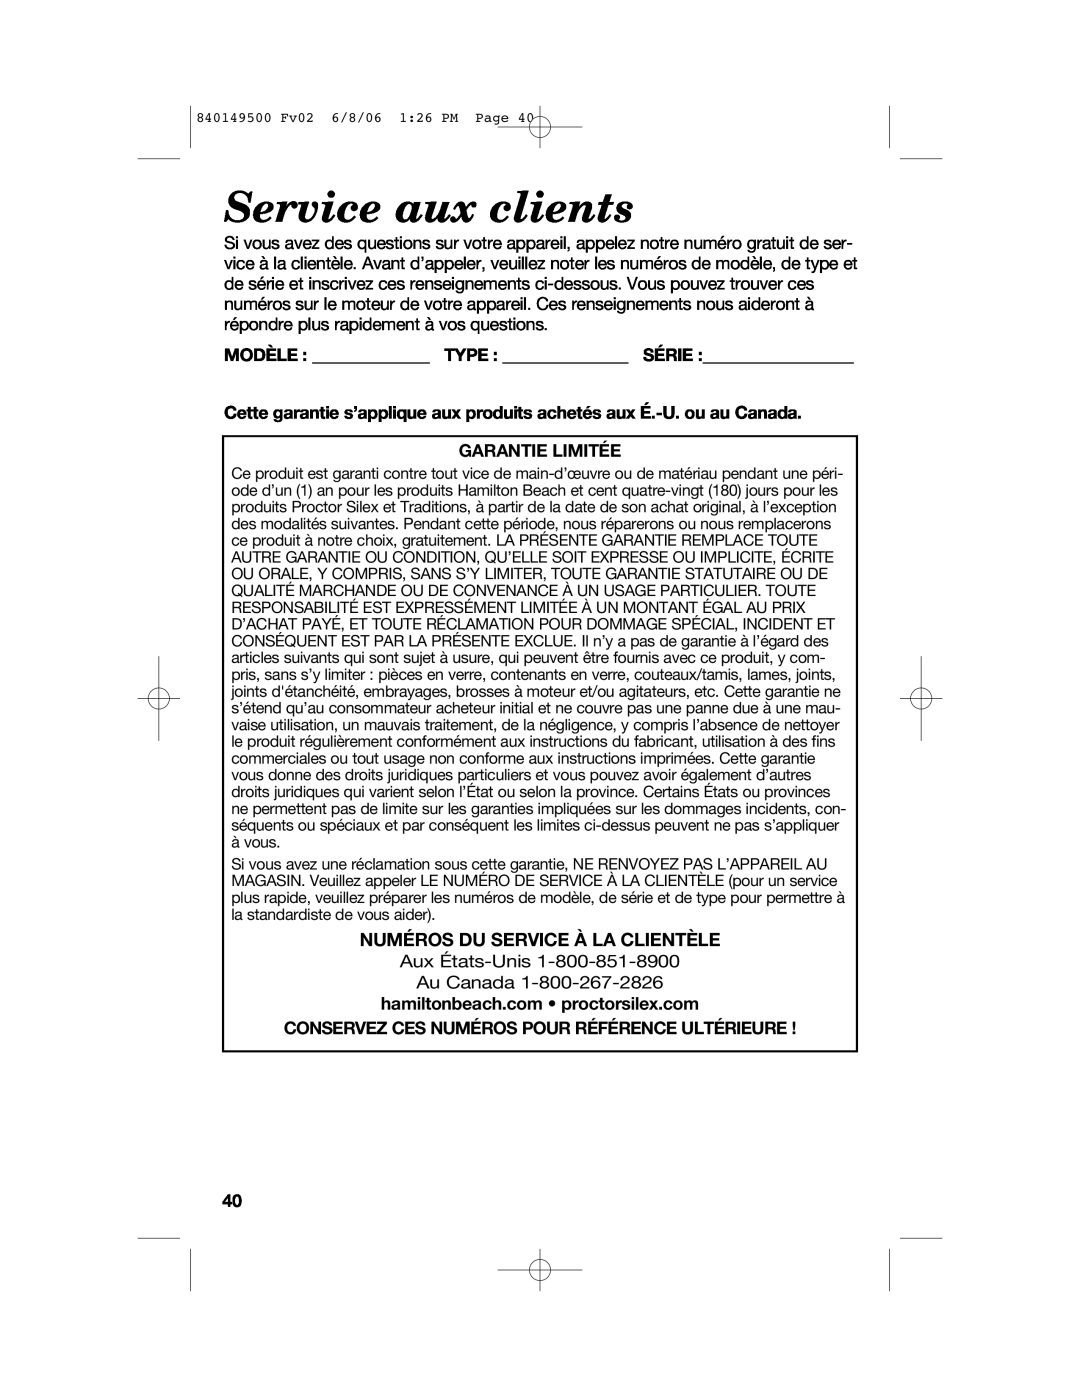 Proctor-Silex 840149500 manual Service aux clients, Modèle Type Série, Garantie Limitée, Numéros Du Service À La Clientèle 